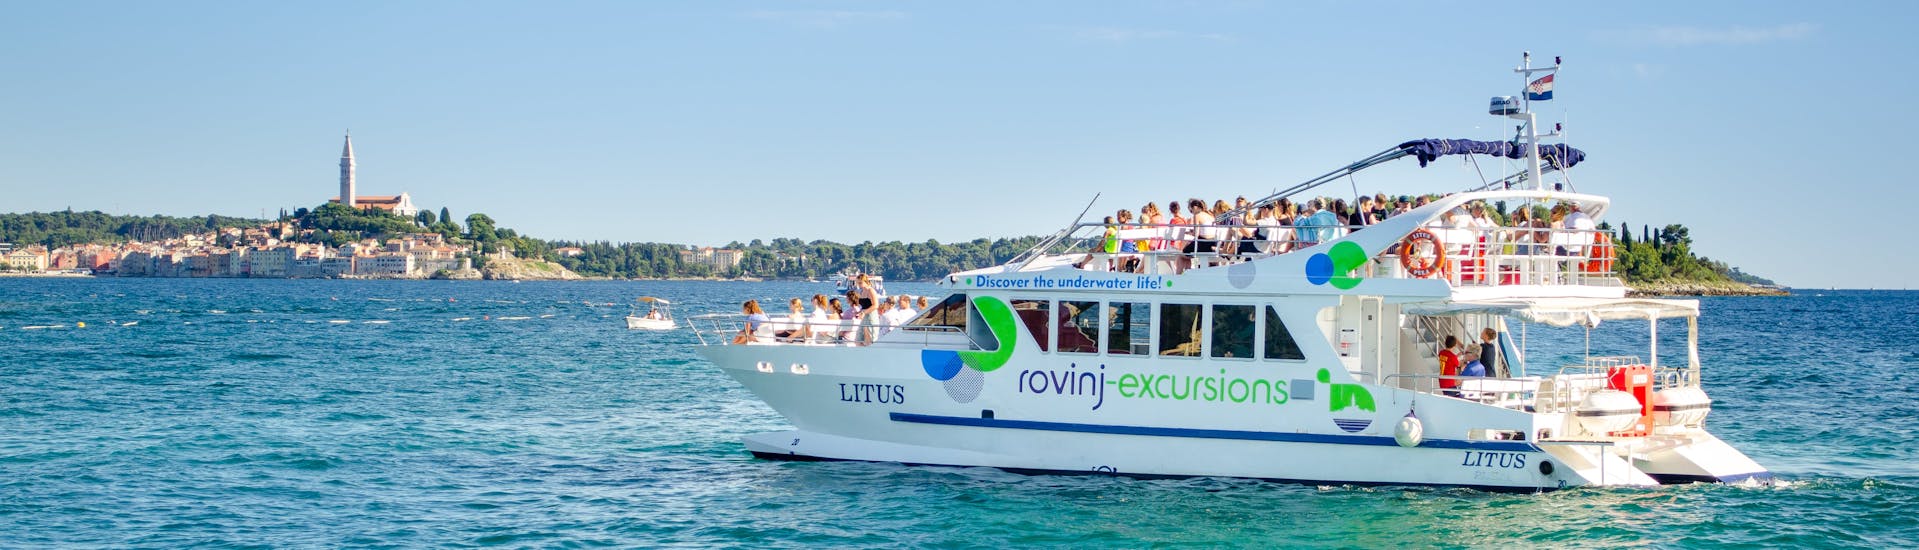 Le bateau LITUS dans l'eau cristalline de l'Istrie pendant la balade en catamaran au coucher du soleil autour de Rovinj avec observation des dauphins avec Rovinj Excursions.